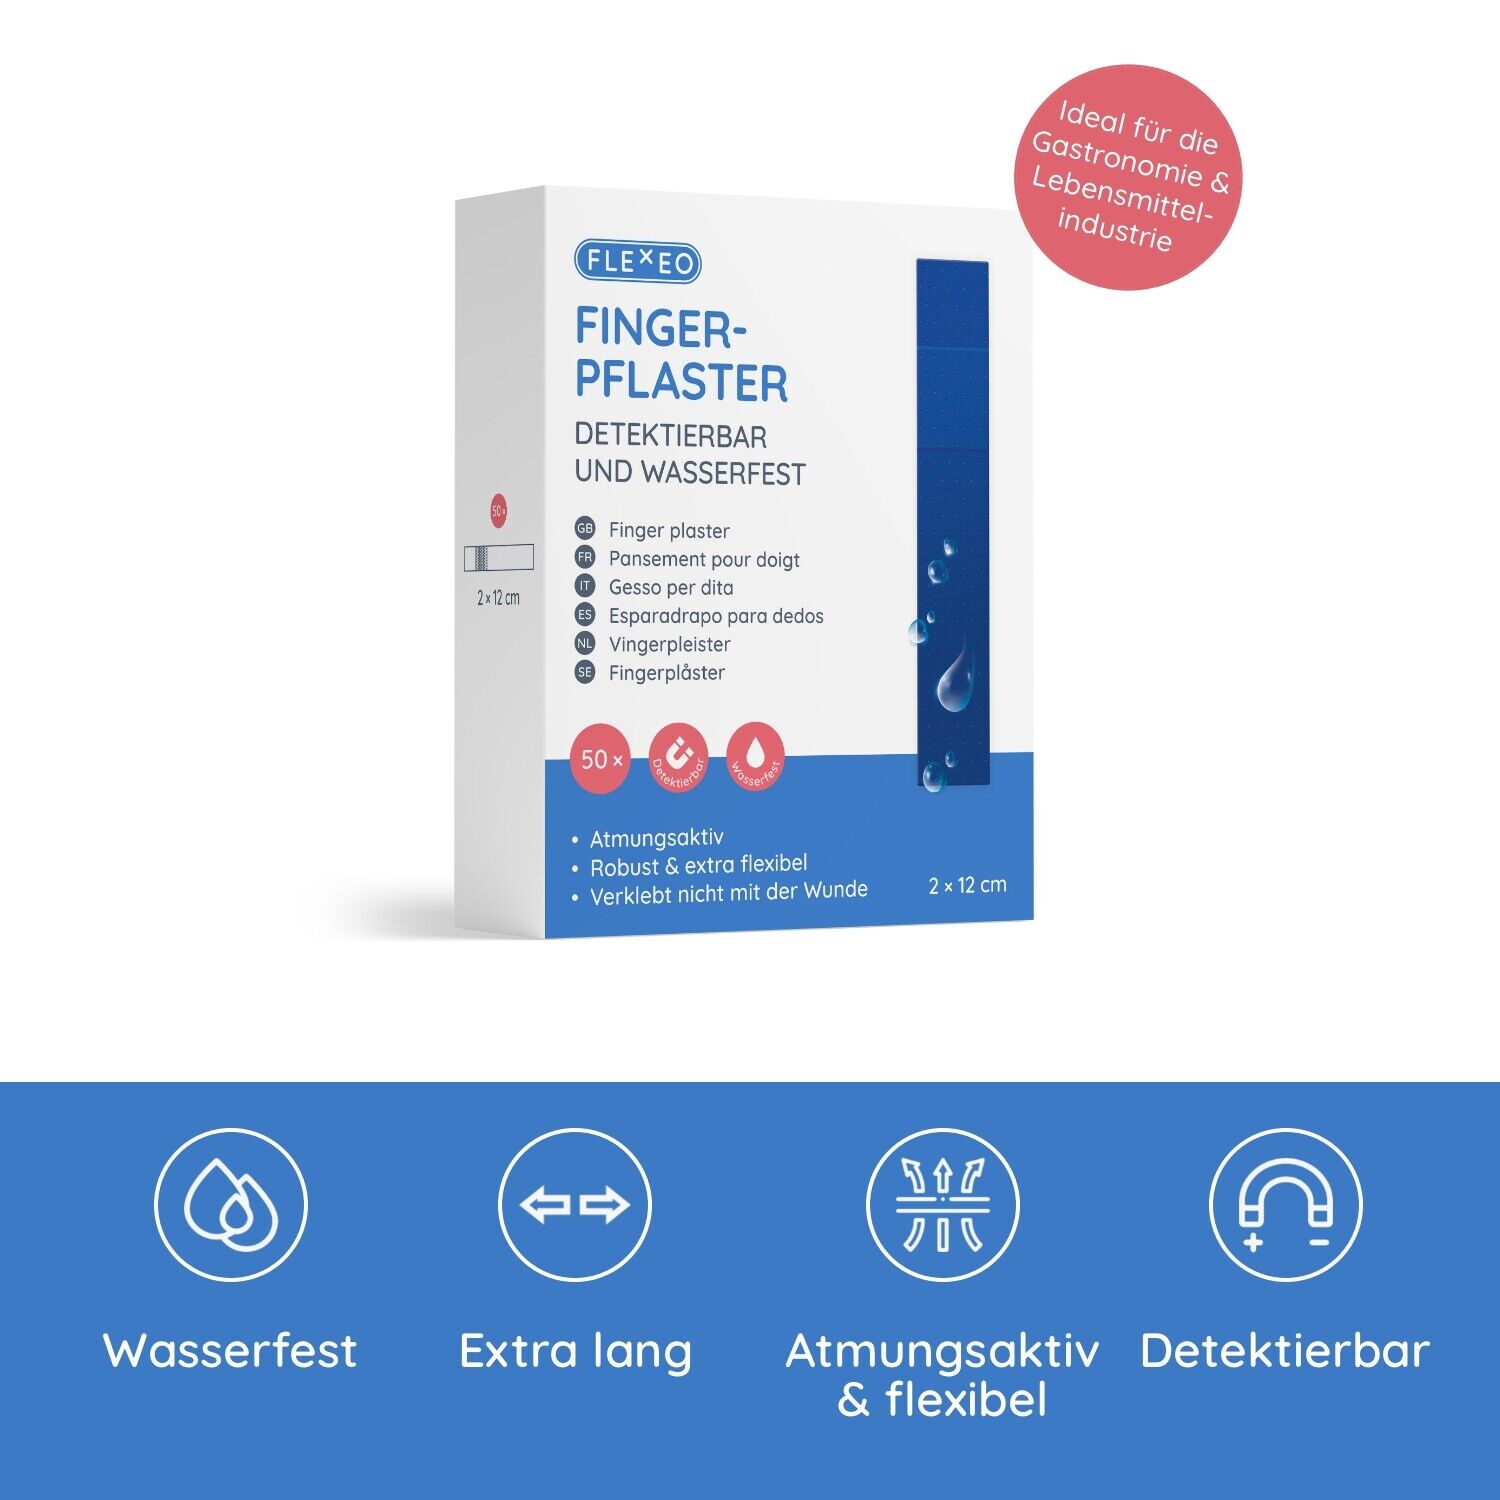 FLEXEO Fingerpflaster detektierbar wasserfest blau Lebensmittelindustrie, 50 Stk